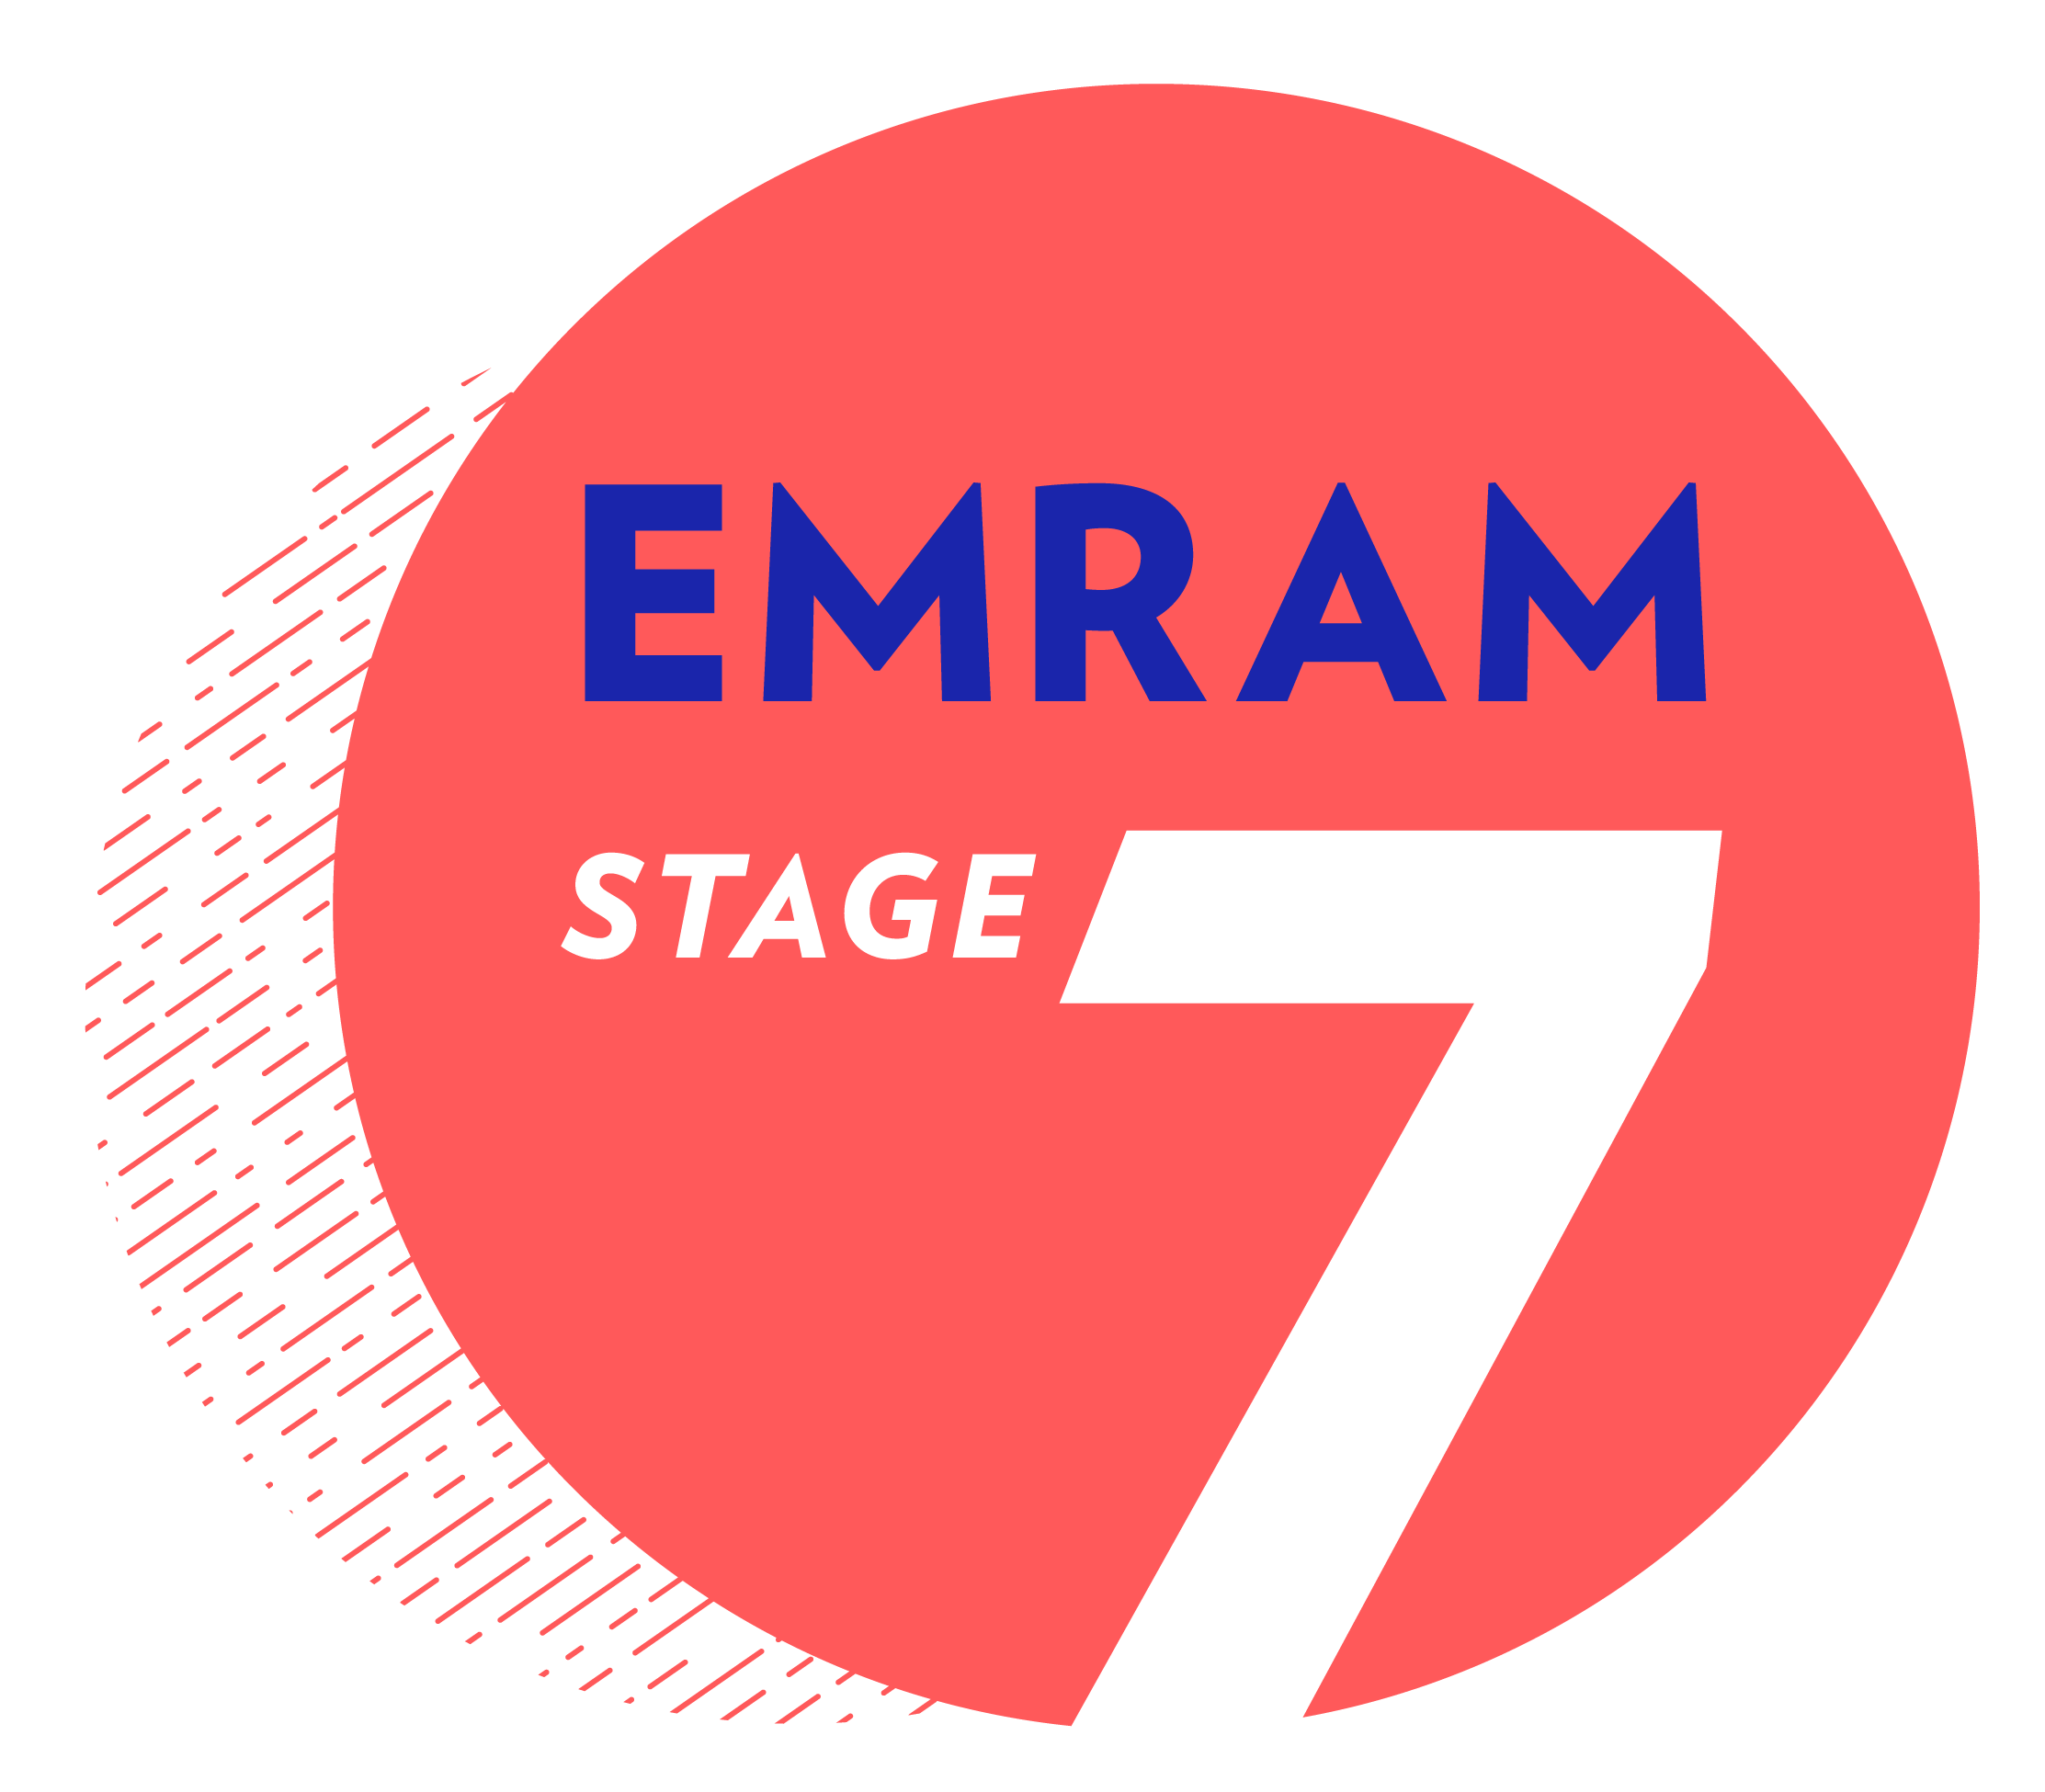 EMRAM Stage 7